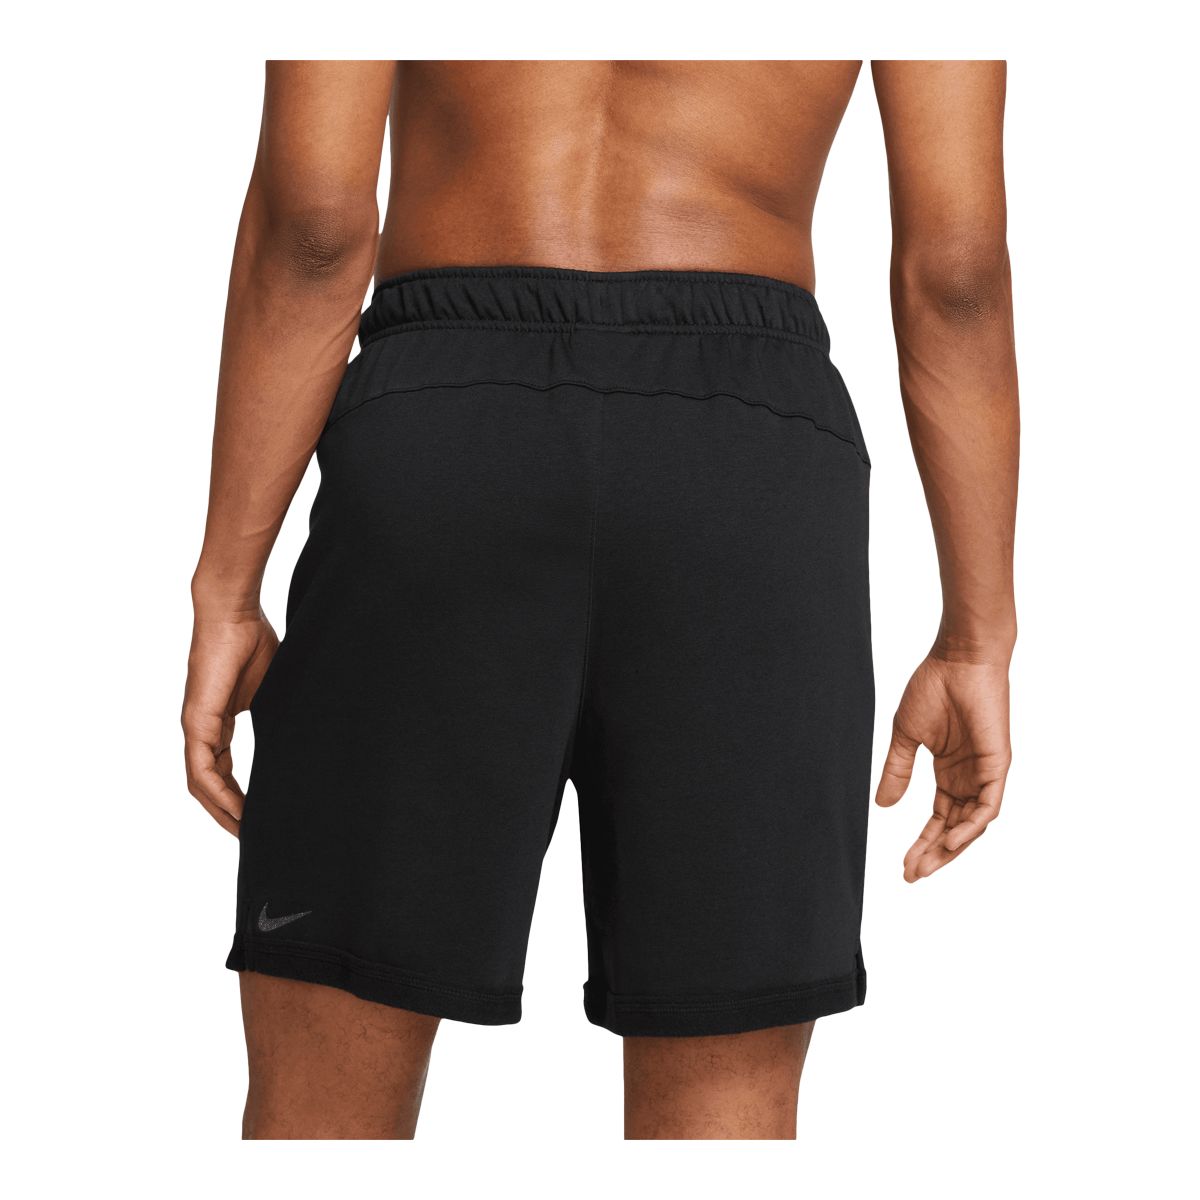 Men's Nike Core Training Shorts